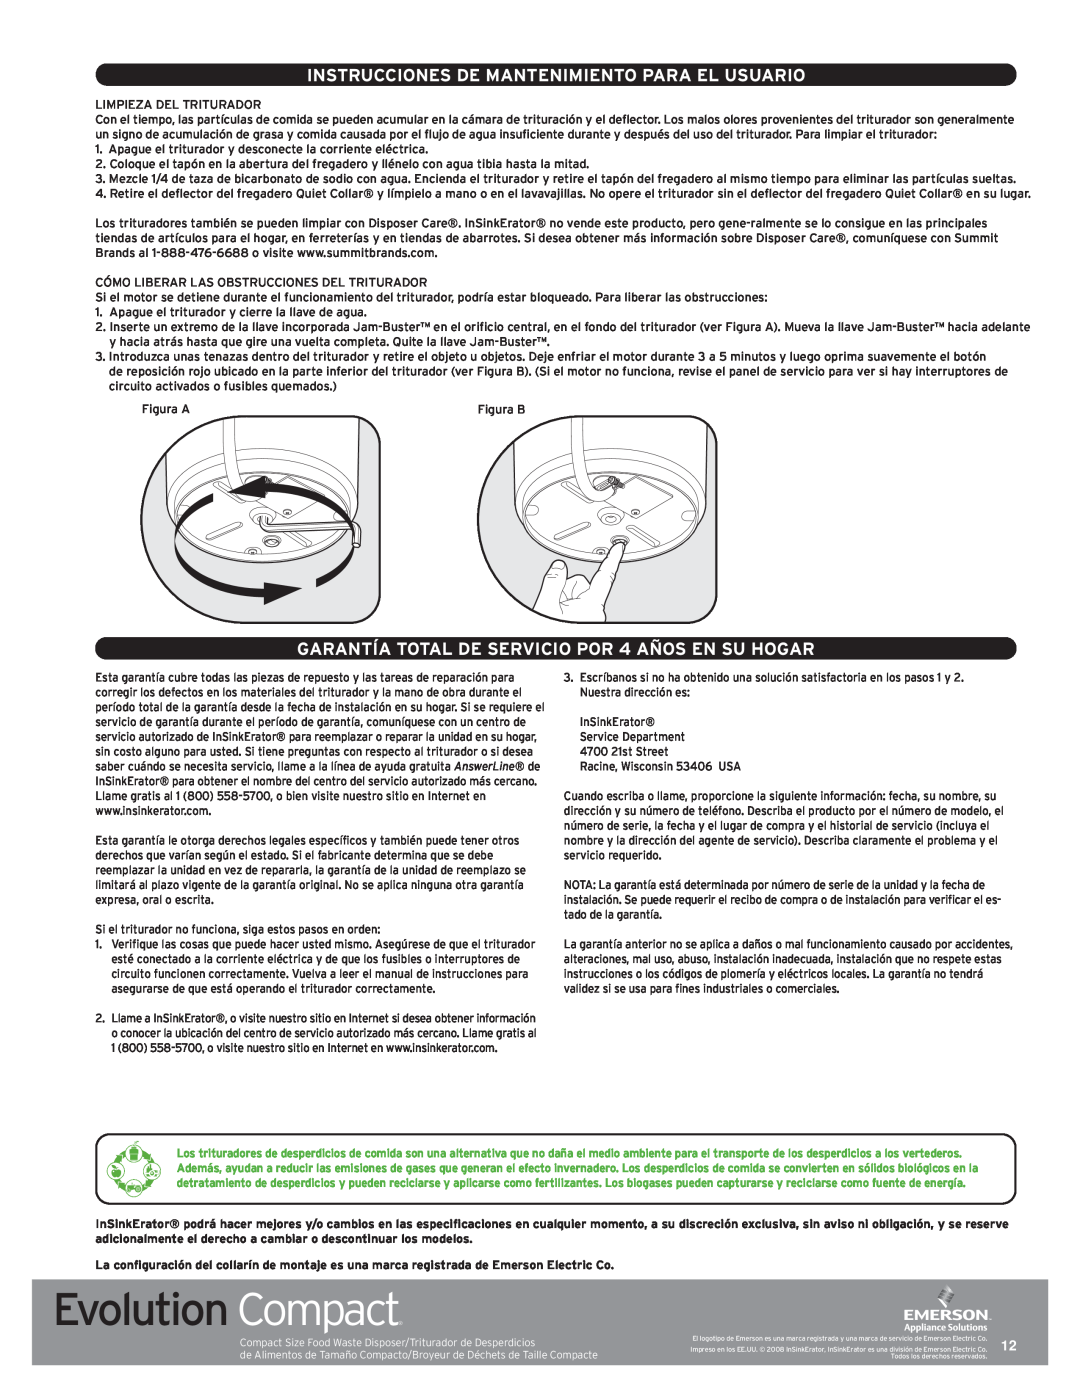 InSinkErator Evolution Compact manual Instrucciones De Mantenimiento Para El Usuario 